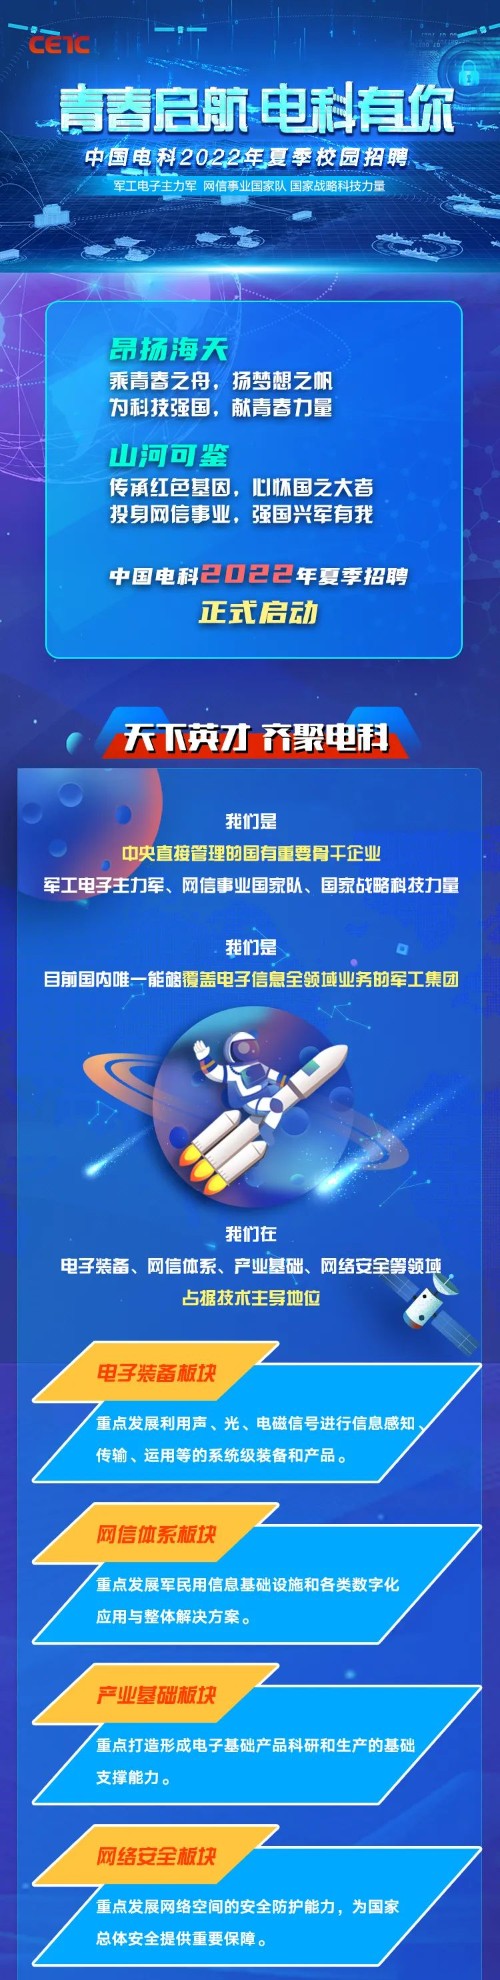 【校招】中国电科2022年夏季校园招聘正式启动-五略商书